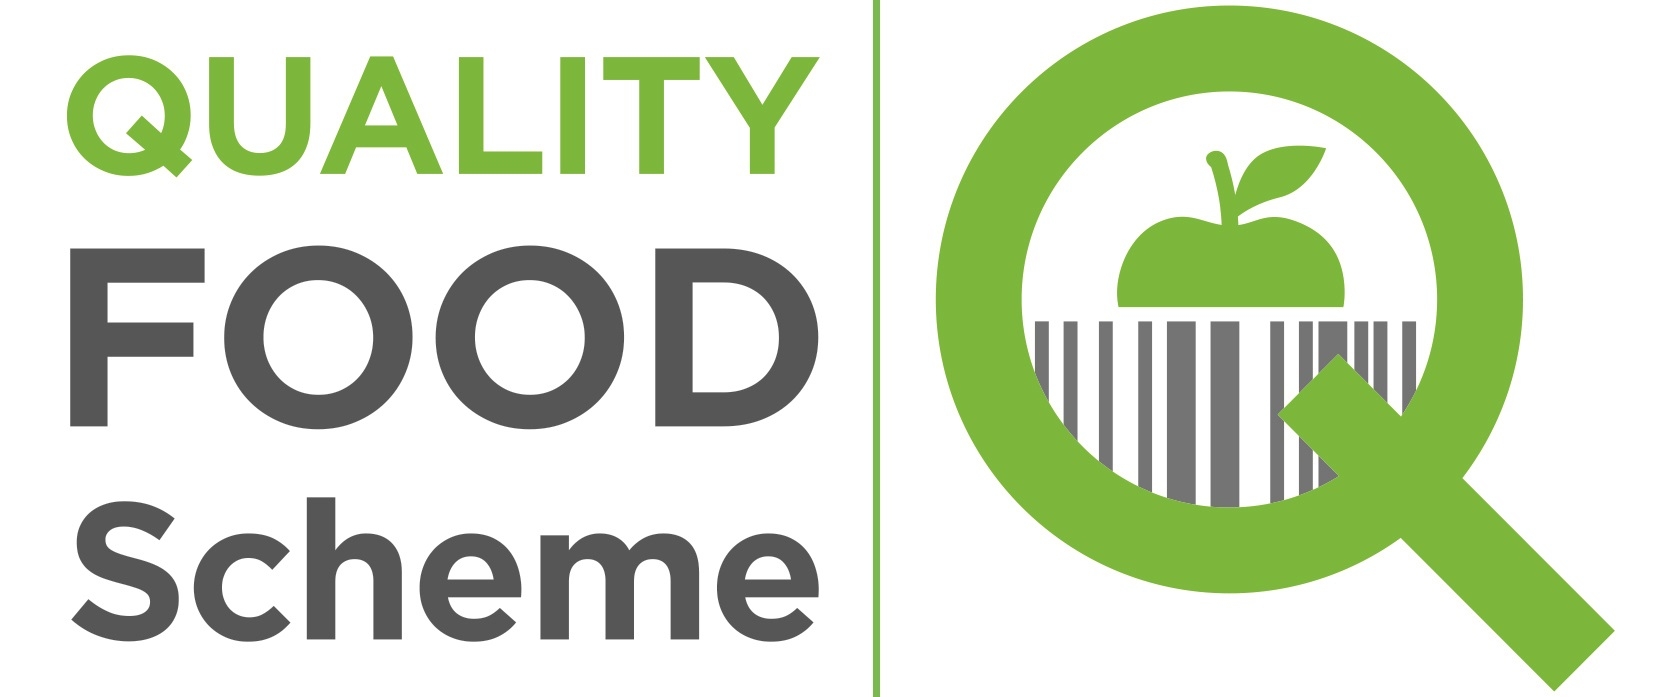 Quality Food Scheme